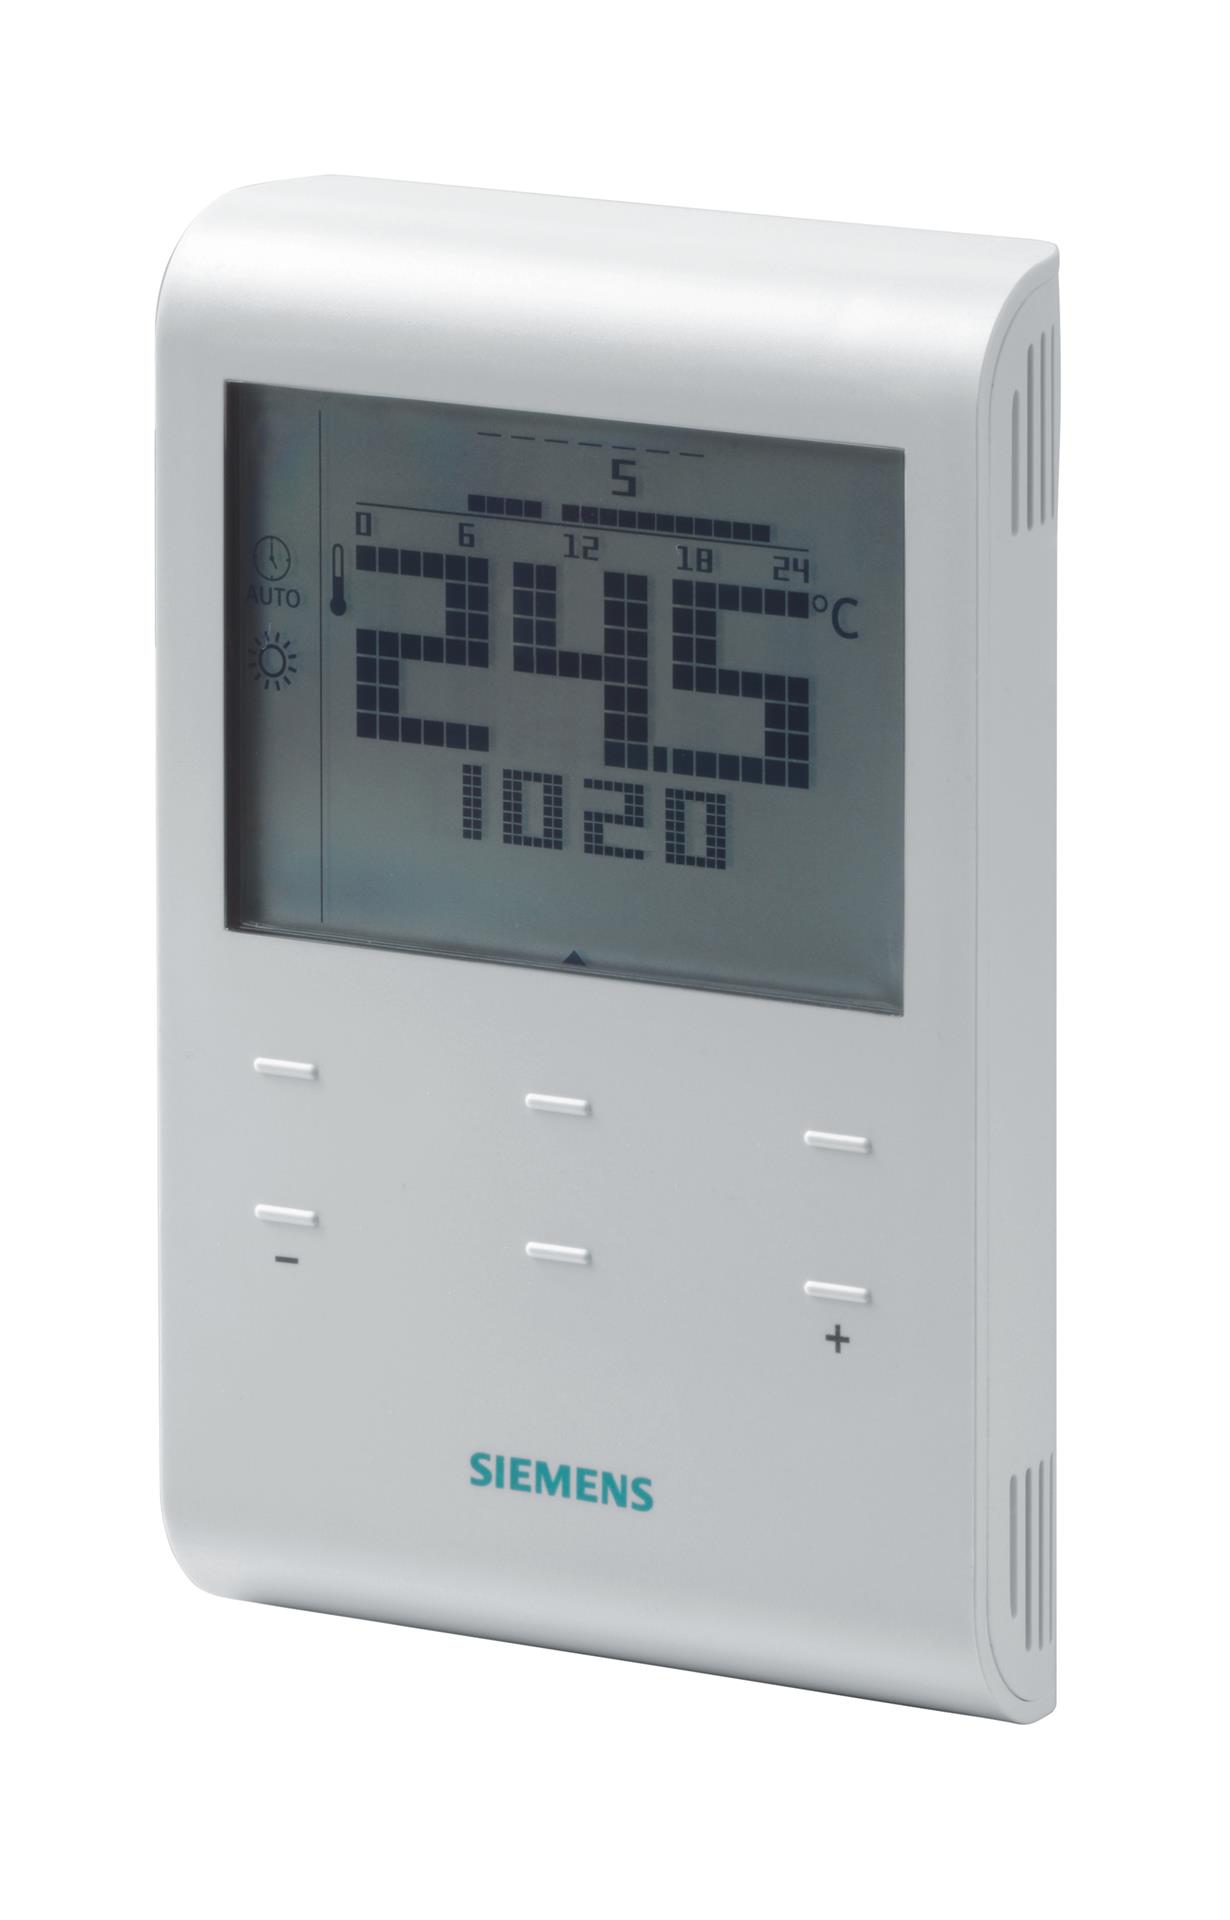 RDE100.1RF | S55770-T320 SIEMENS Автономные комнатные термостаты цена, купить